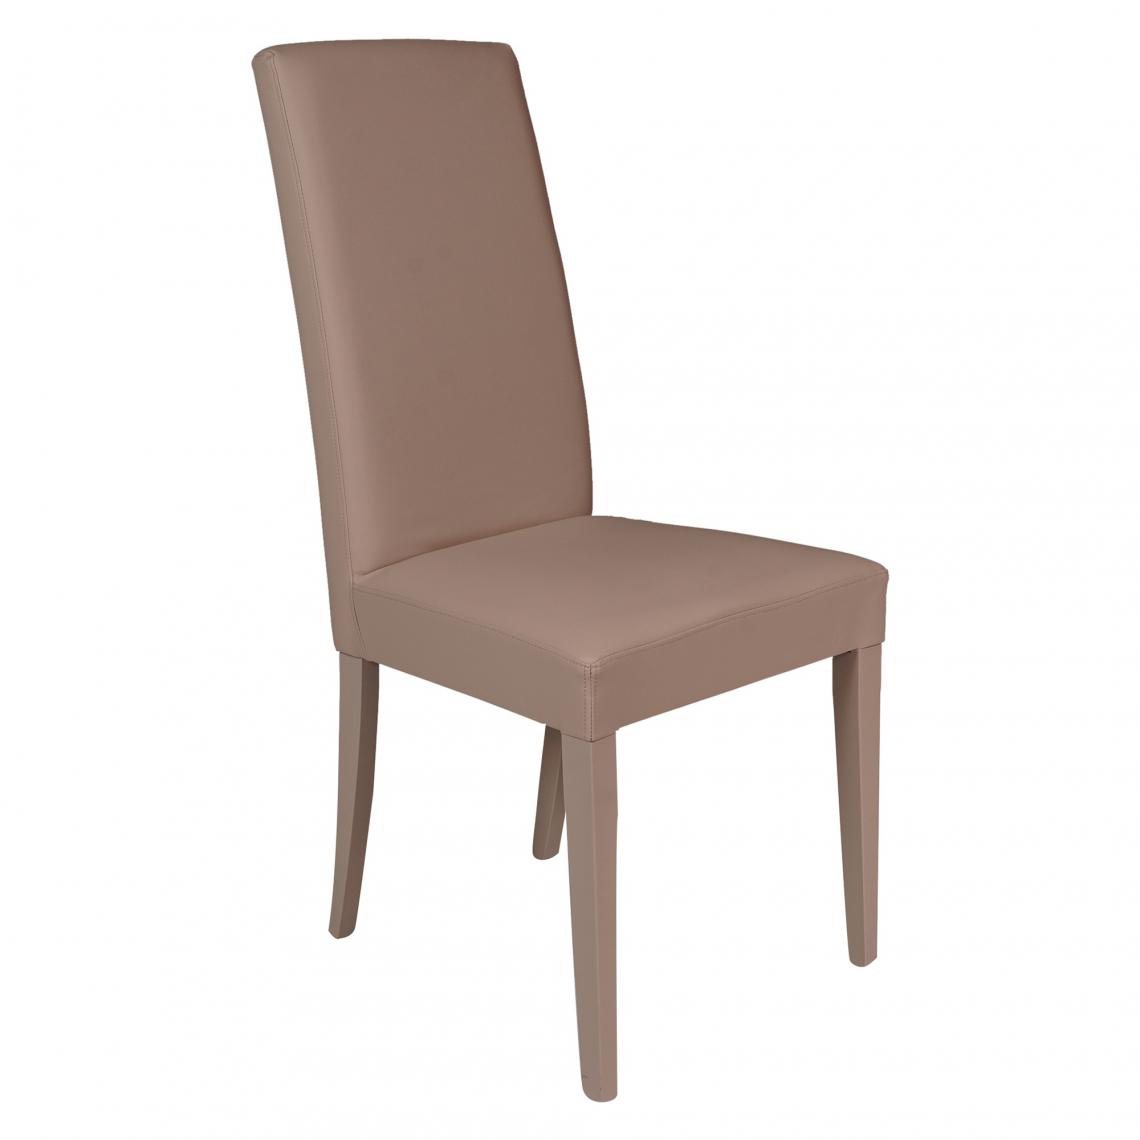 Alter - Chaise classique en éco-cuir rembourrée avec pieds en bois, Fauteuil de salle à manger, Made in Italy, cm 46x54h98, Couleur sable - Chaises